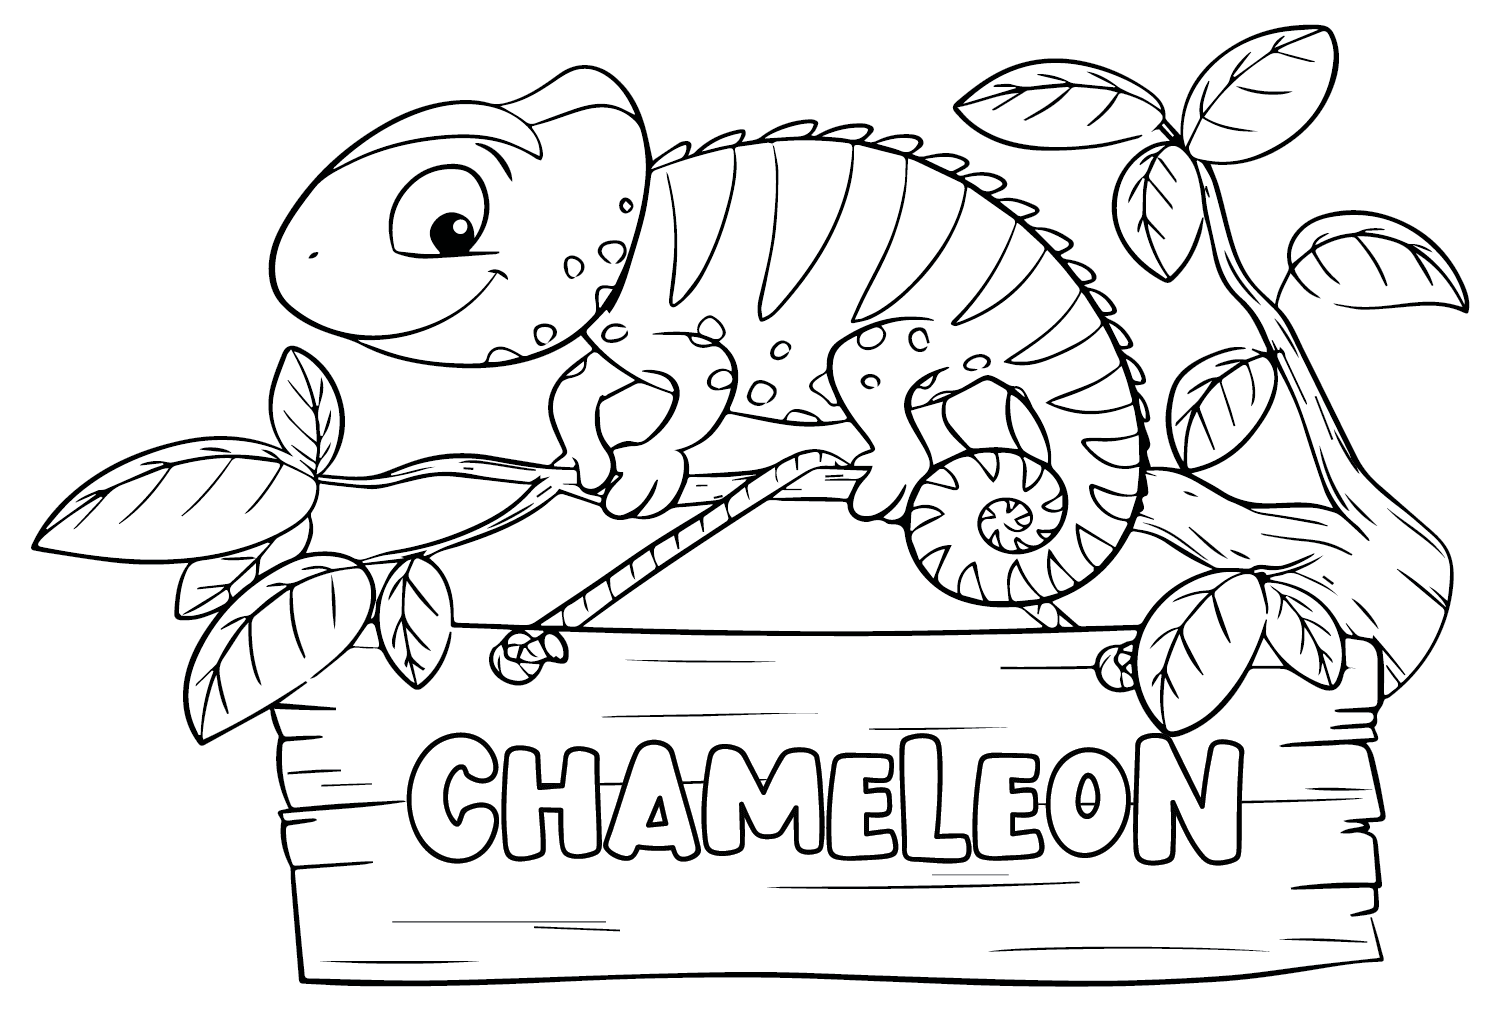 Mellers Chameleon kleurplaat van Chameleon